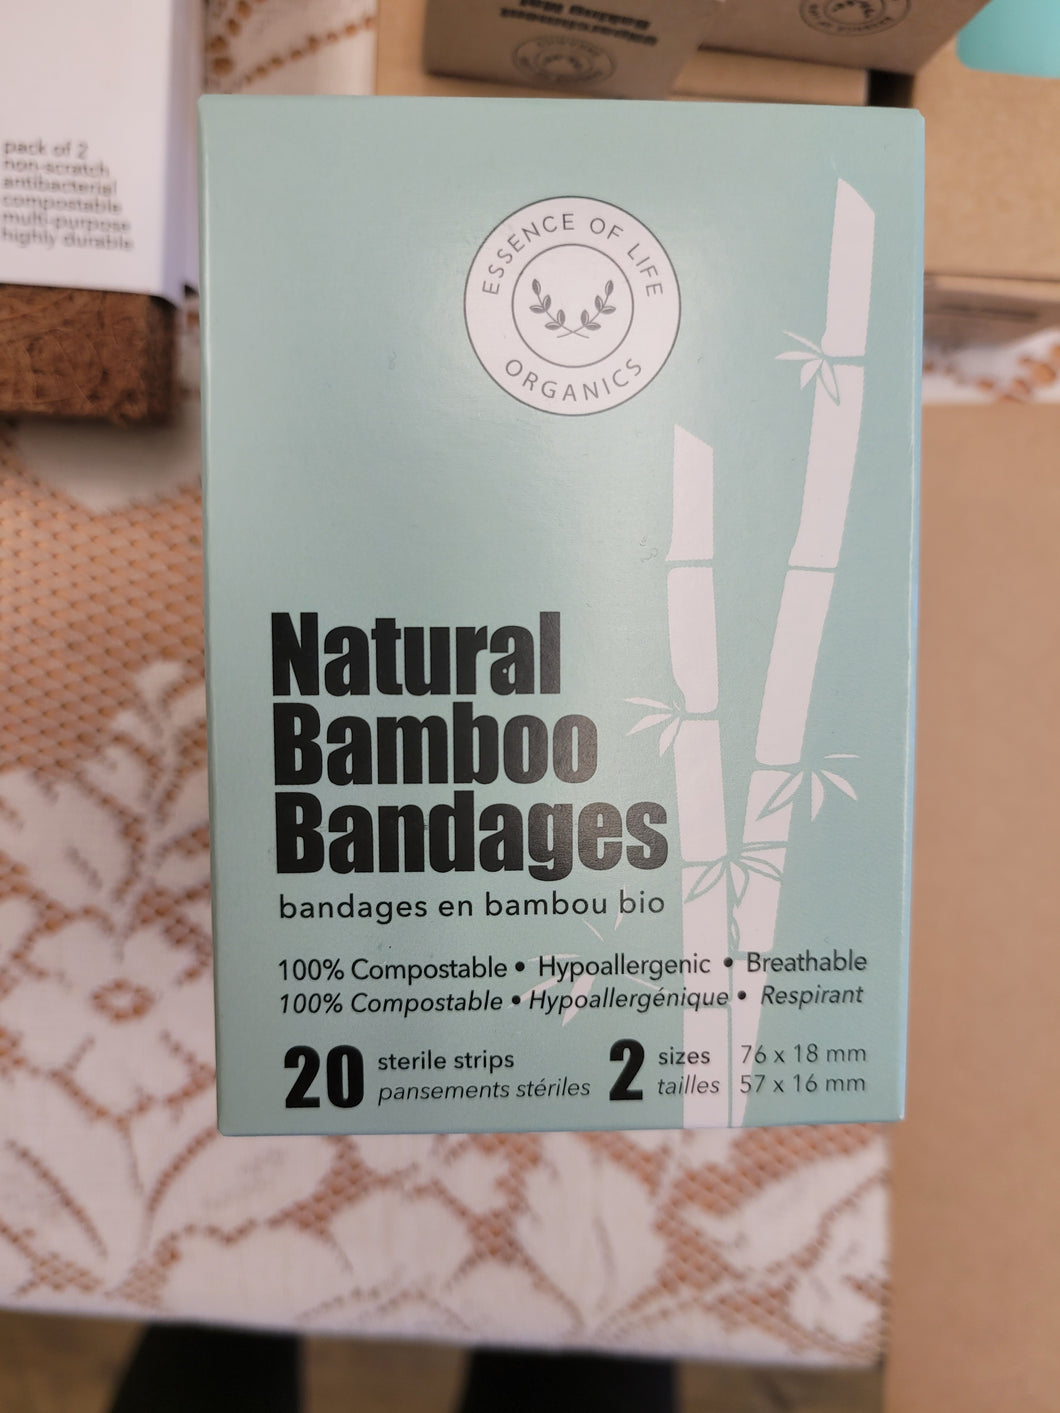 Bamboo bandages